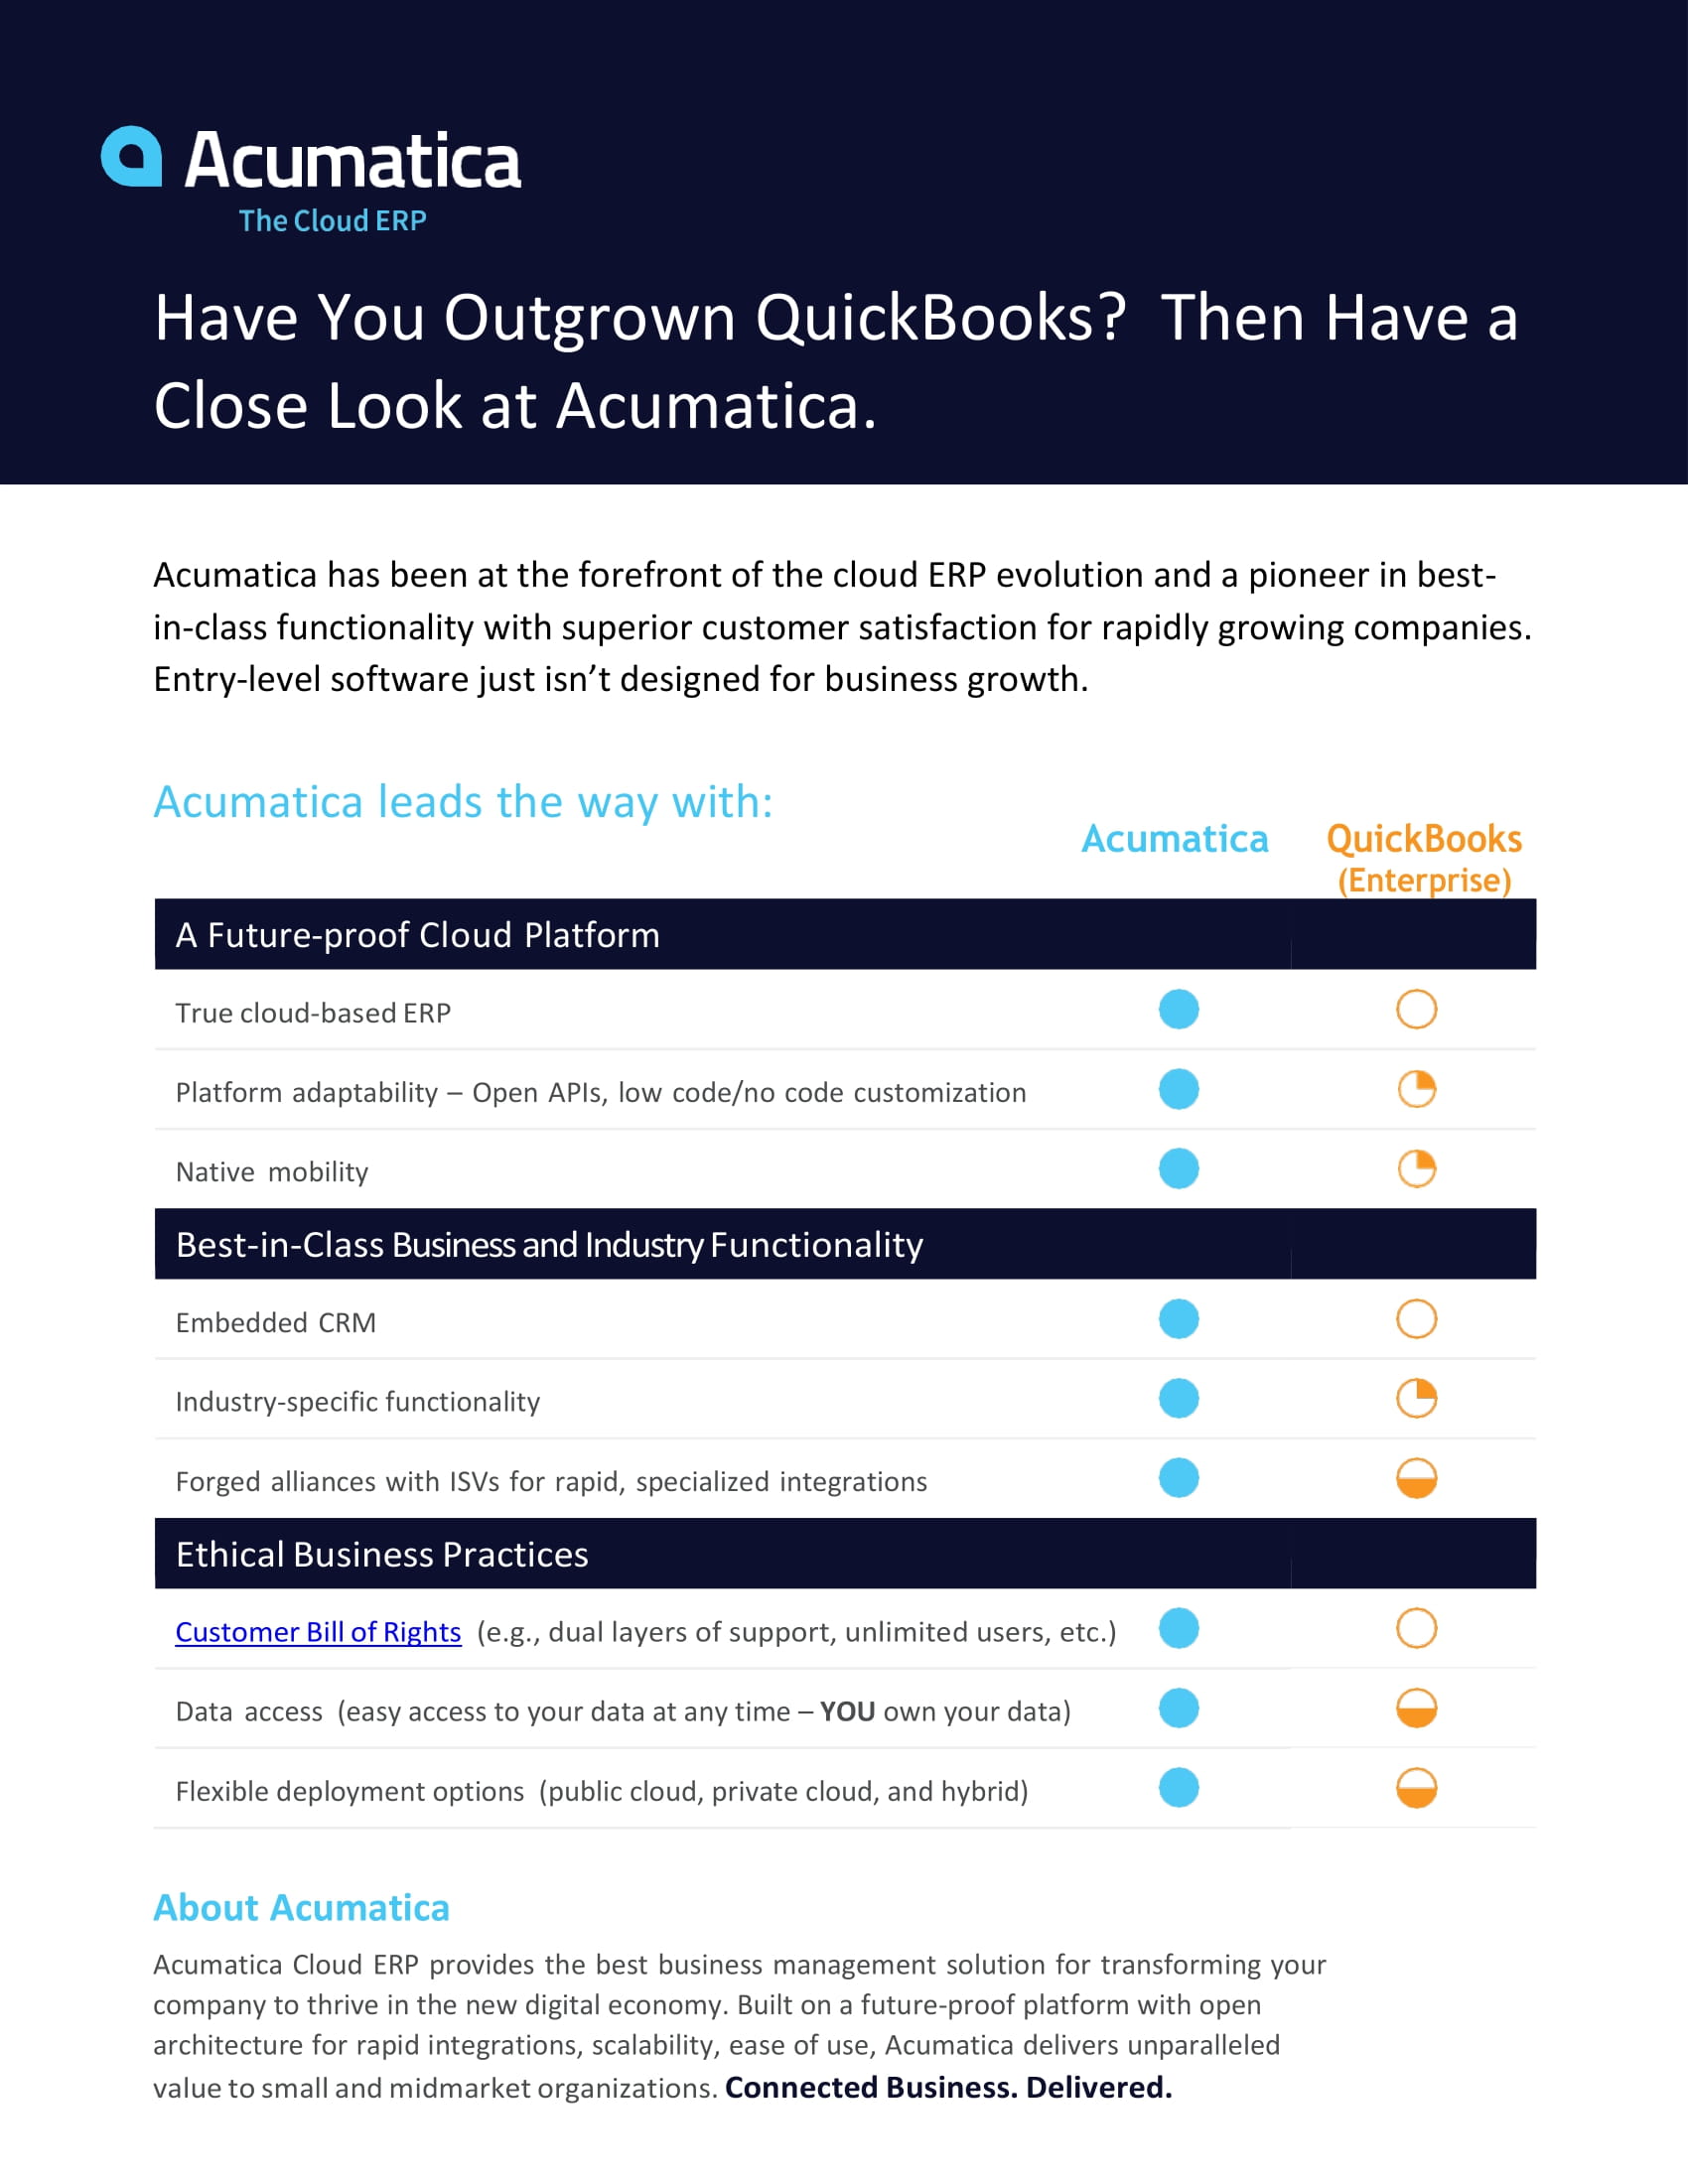 Acumatica vs. QuickBooks